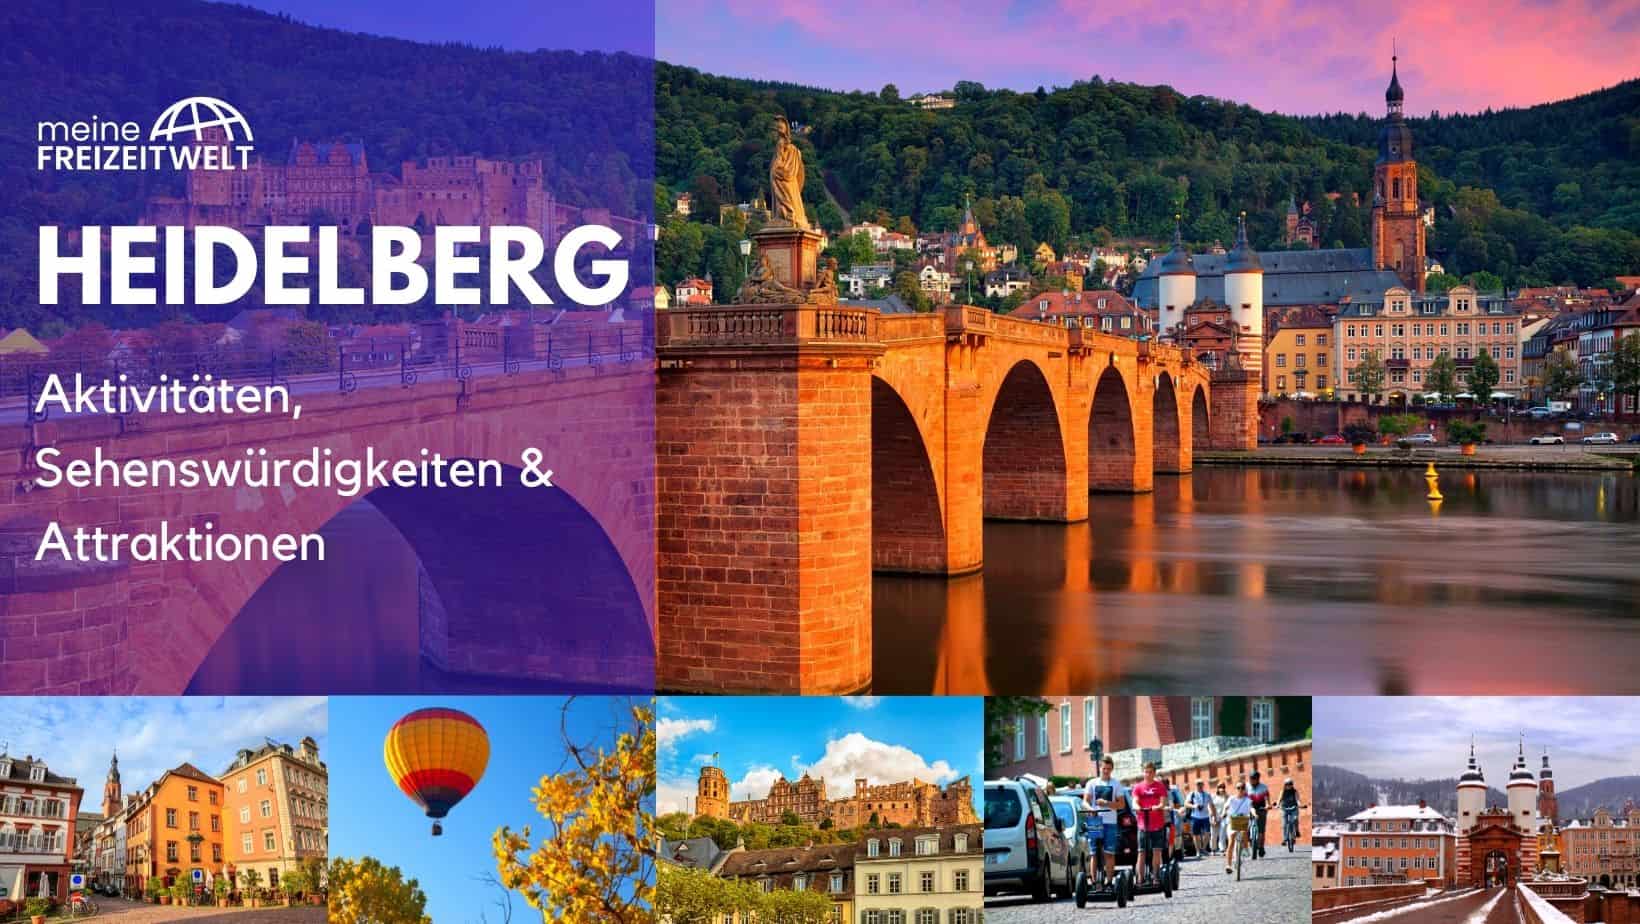 Heidelberg Aktivitäten, Sehenswürdigkeiten & Attraktionen